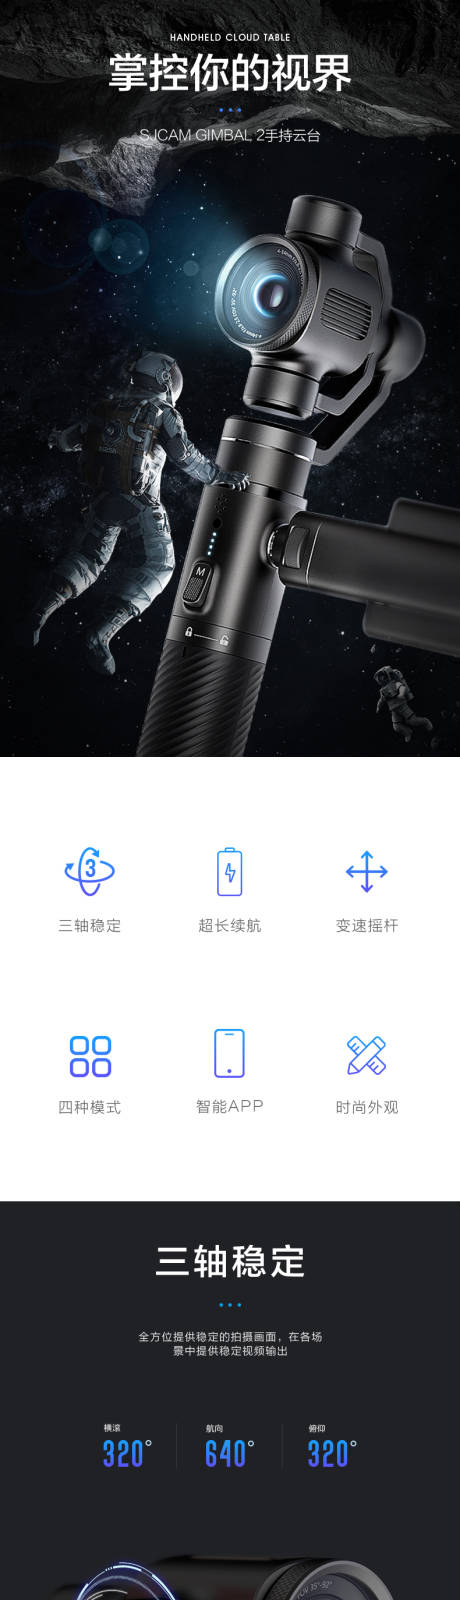 淘宝3C手机稳定器云台详情页模版-源文件【享设计】